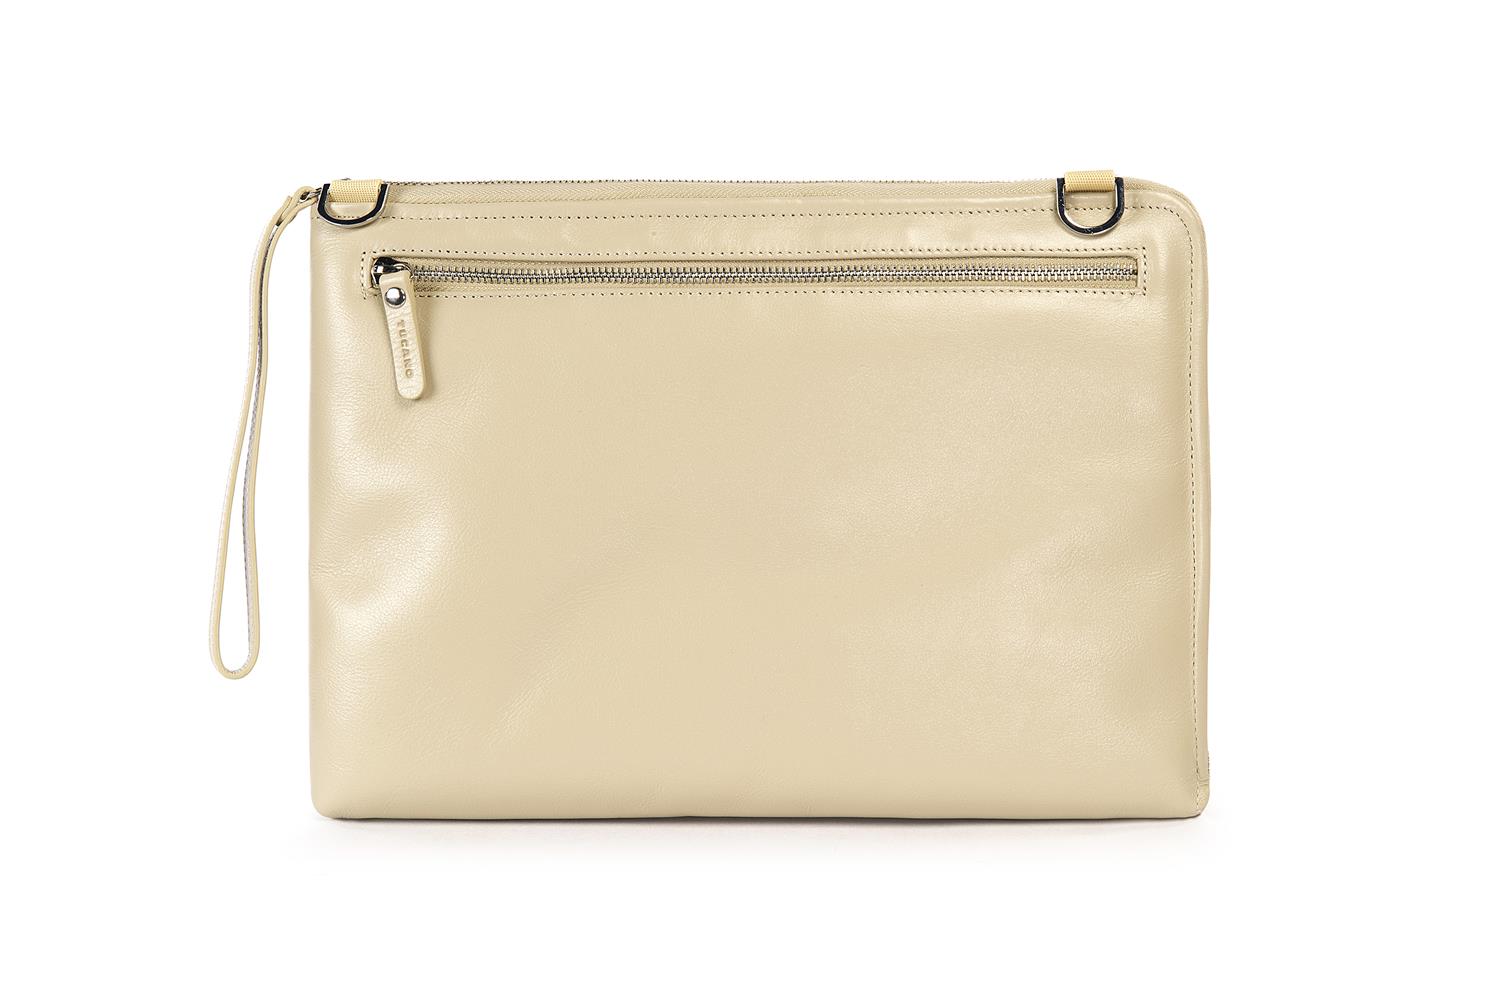 Tucano Elle Damen Notebooktasche aus Leder für 13 Zoll - Ivory/Sandfarben